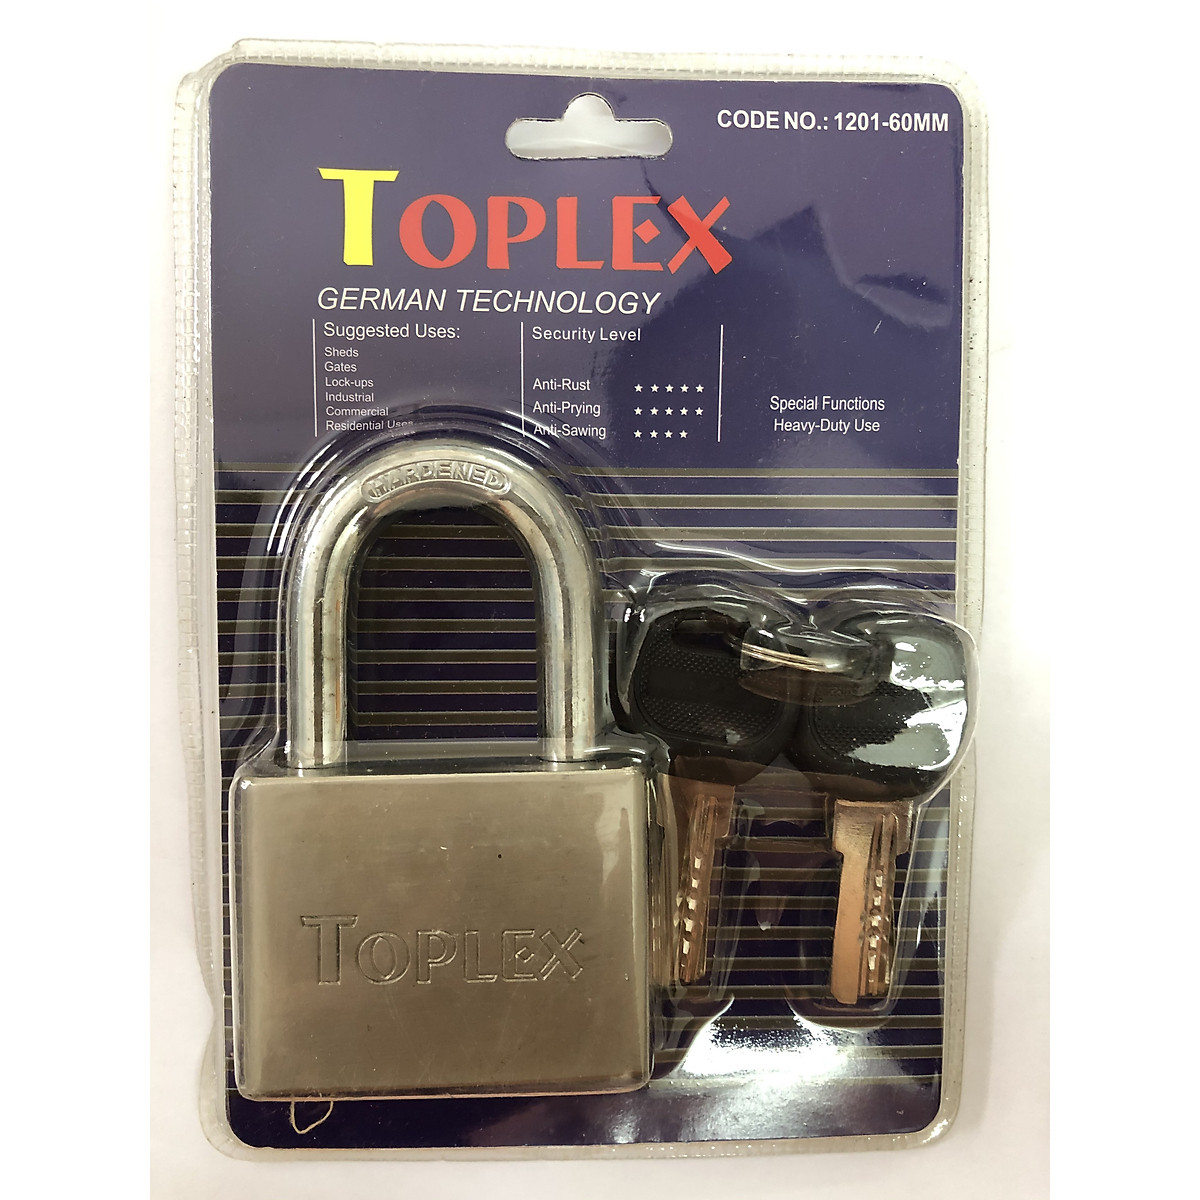 Ổ khóa cao cấp Toplex là sự kết hợp hoàn hảo giữa thiết kế đẹp và tính năng hoạt động nhanh chóng. Kiểu dáng sang trọng và khả năng kháng sốc nổi bật, sản phẩm này được chế tạo bằng vật liệu chất lượng cao, đảm bảo tuổi thọ và hiệu suất sử dụng lâu dài. Nếu bạn muốn tìm kiếm một ổ khóa hiện đại và đáng tin cậy, Toplex sẽ không làm bạn thất vọng.